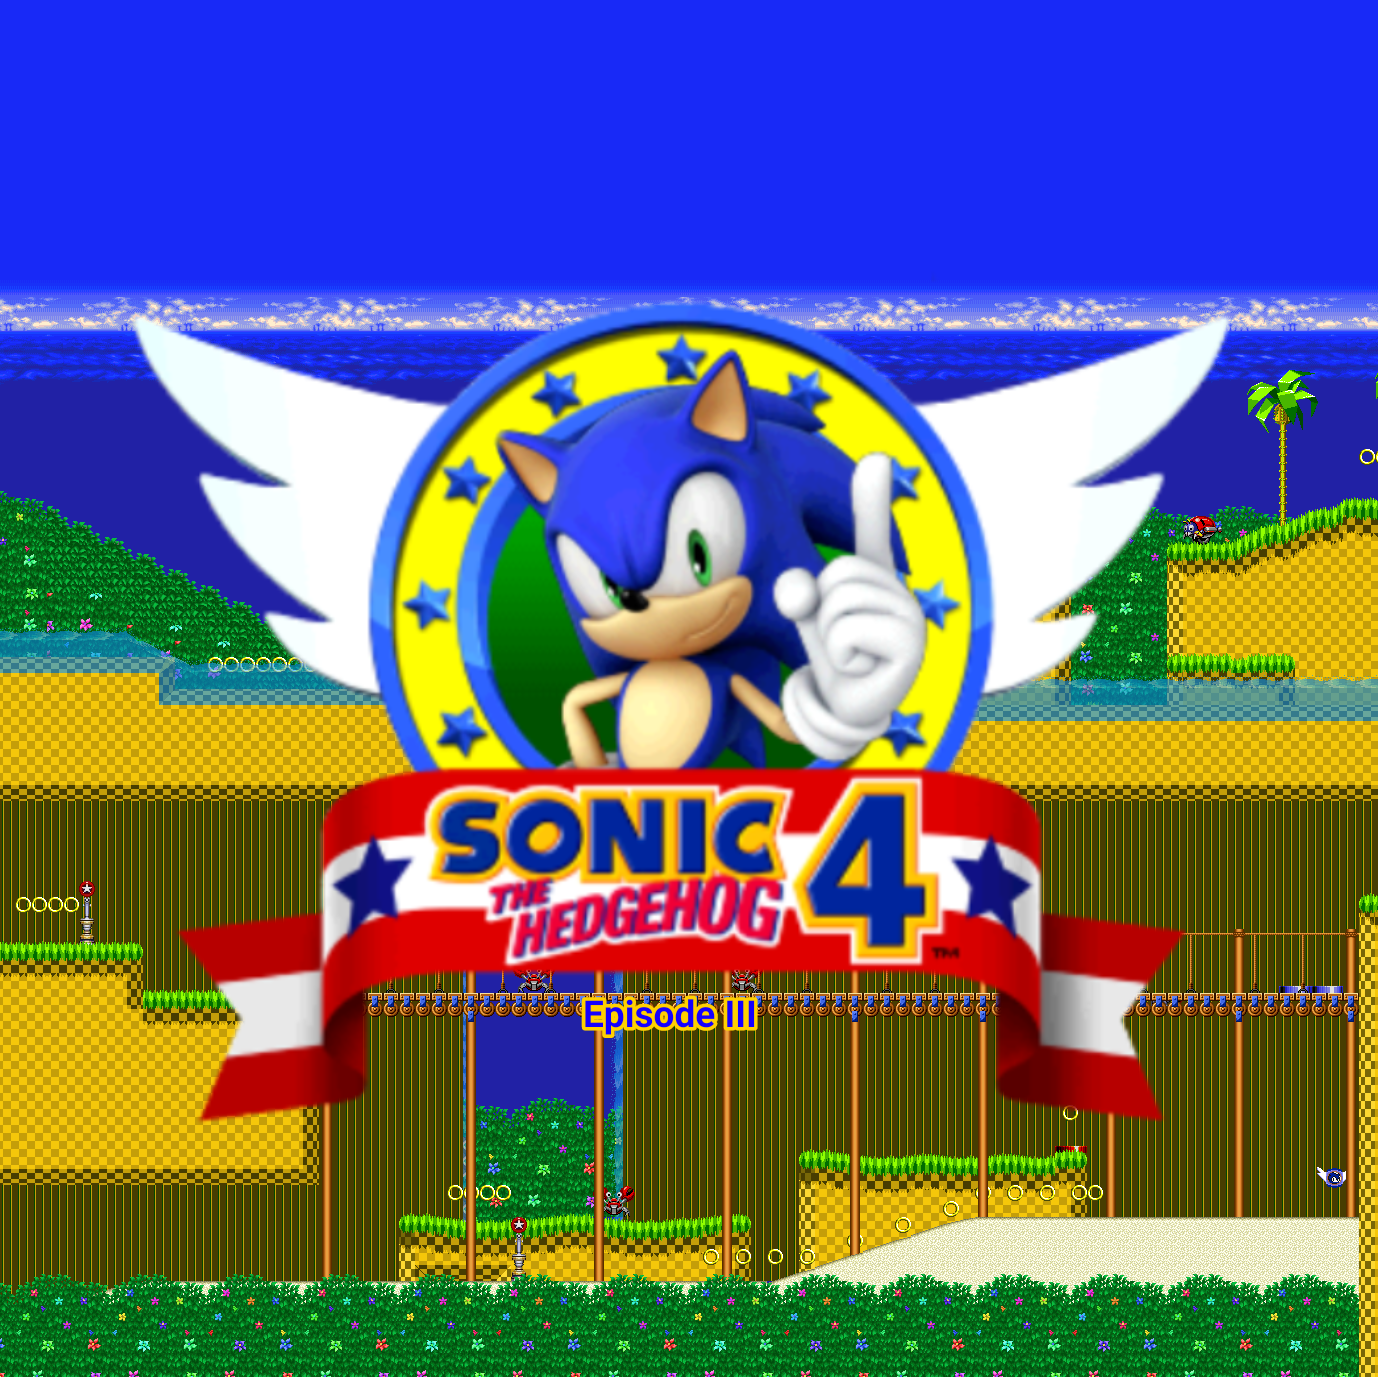 Sonic 4 Episode III (FANGAME)